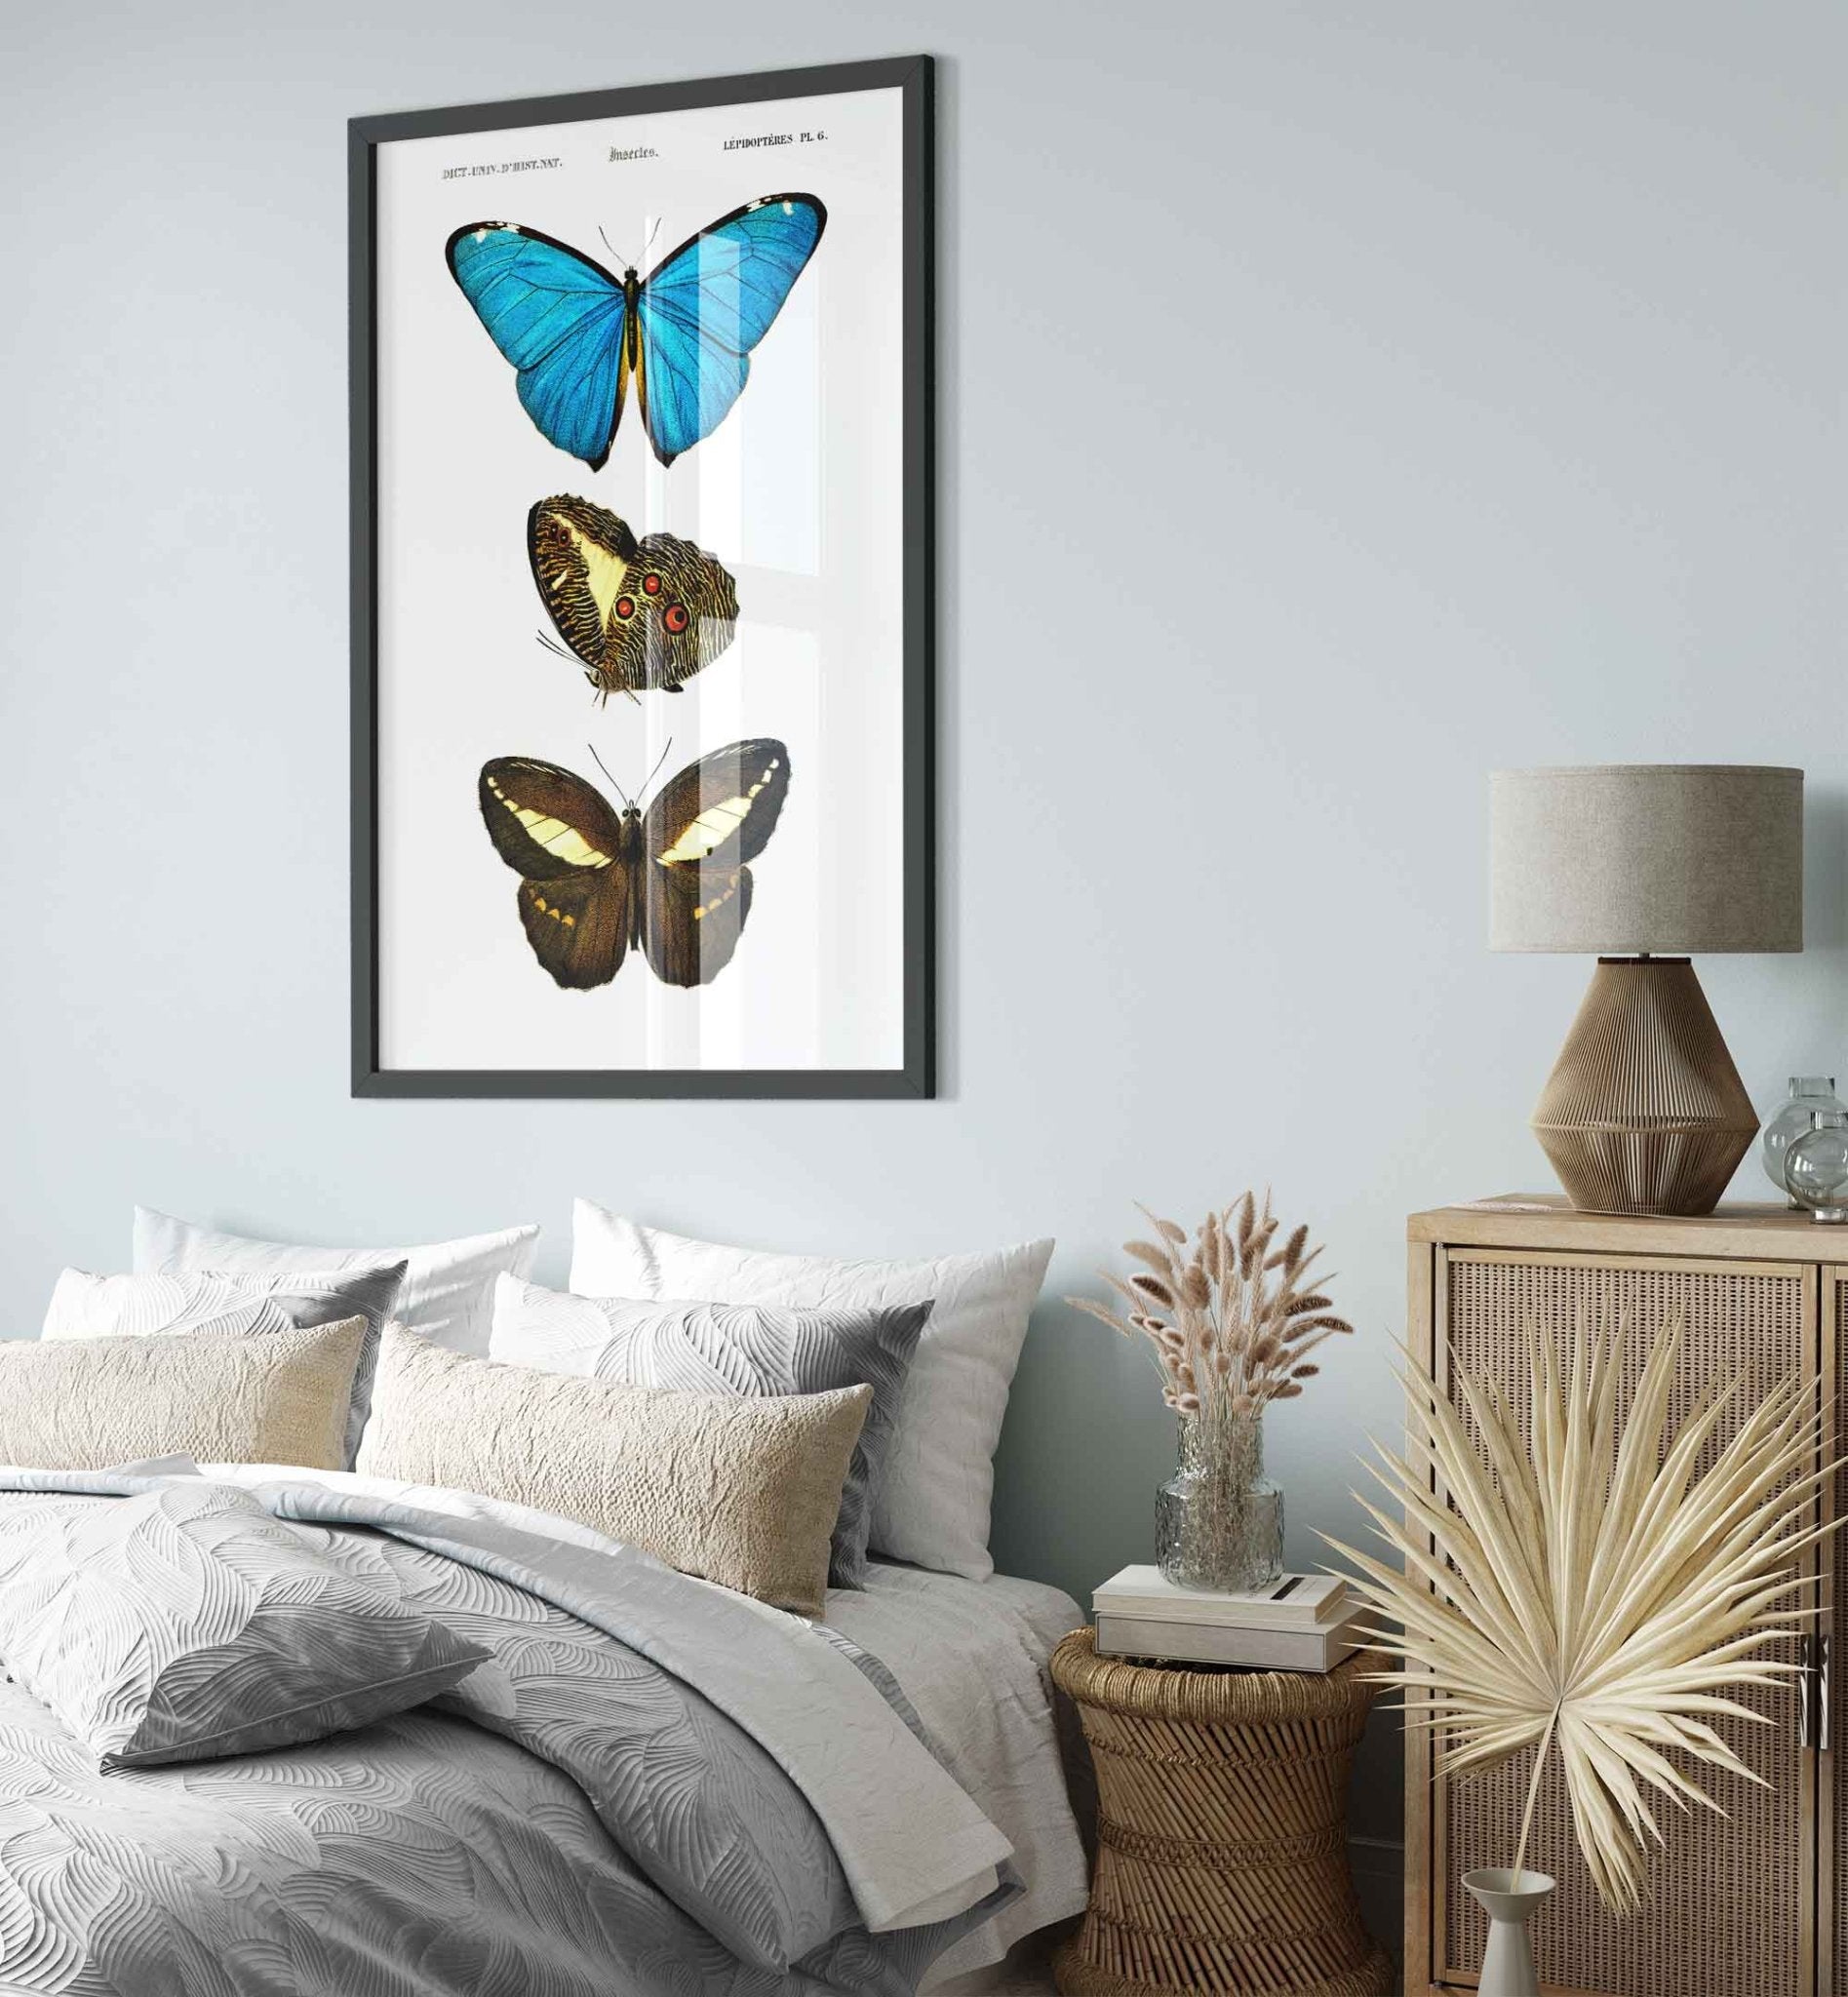 Vintage Butterfly Framed, Set Of 3 Butterflies, Charles Dessalines, Vintage Wall Art Butterflies Framed Print - WallArtPrints4U